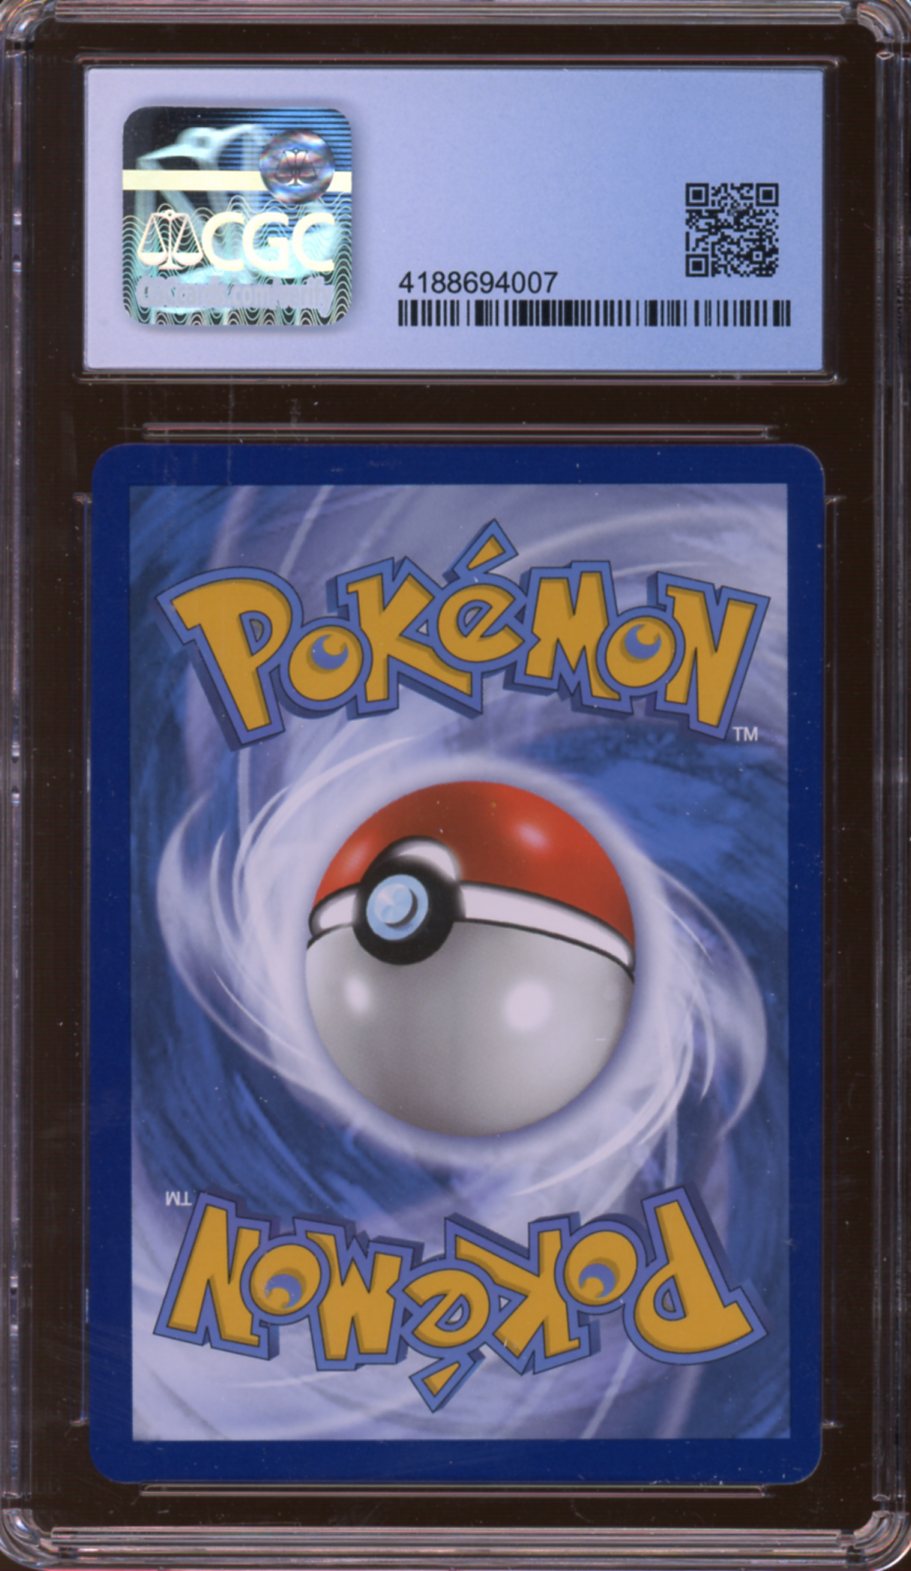 Pokémon Zacian V & Zamazenta V Mint Psa - Desconto no Preço